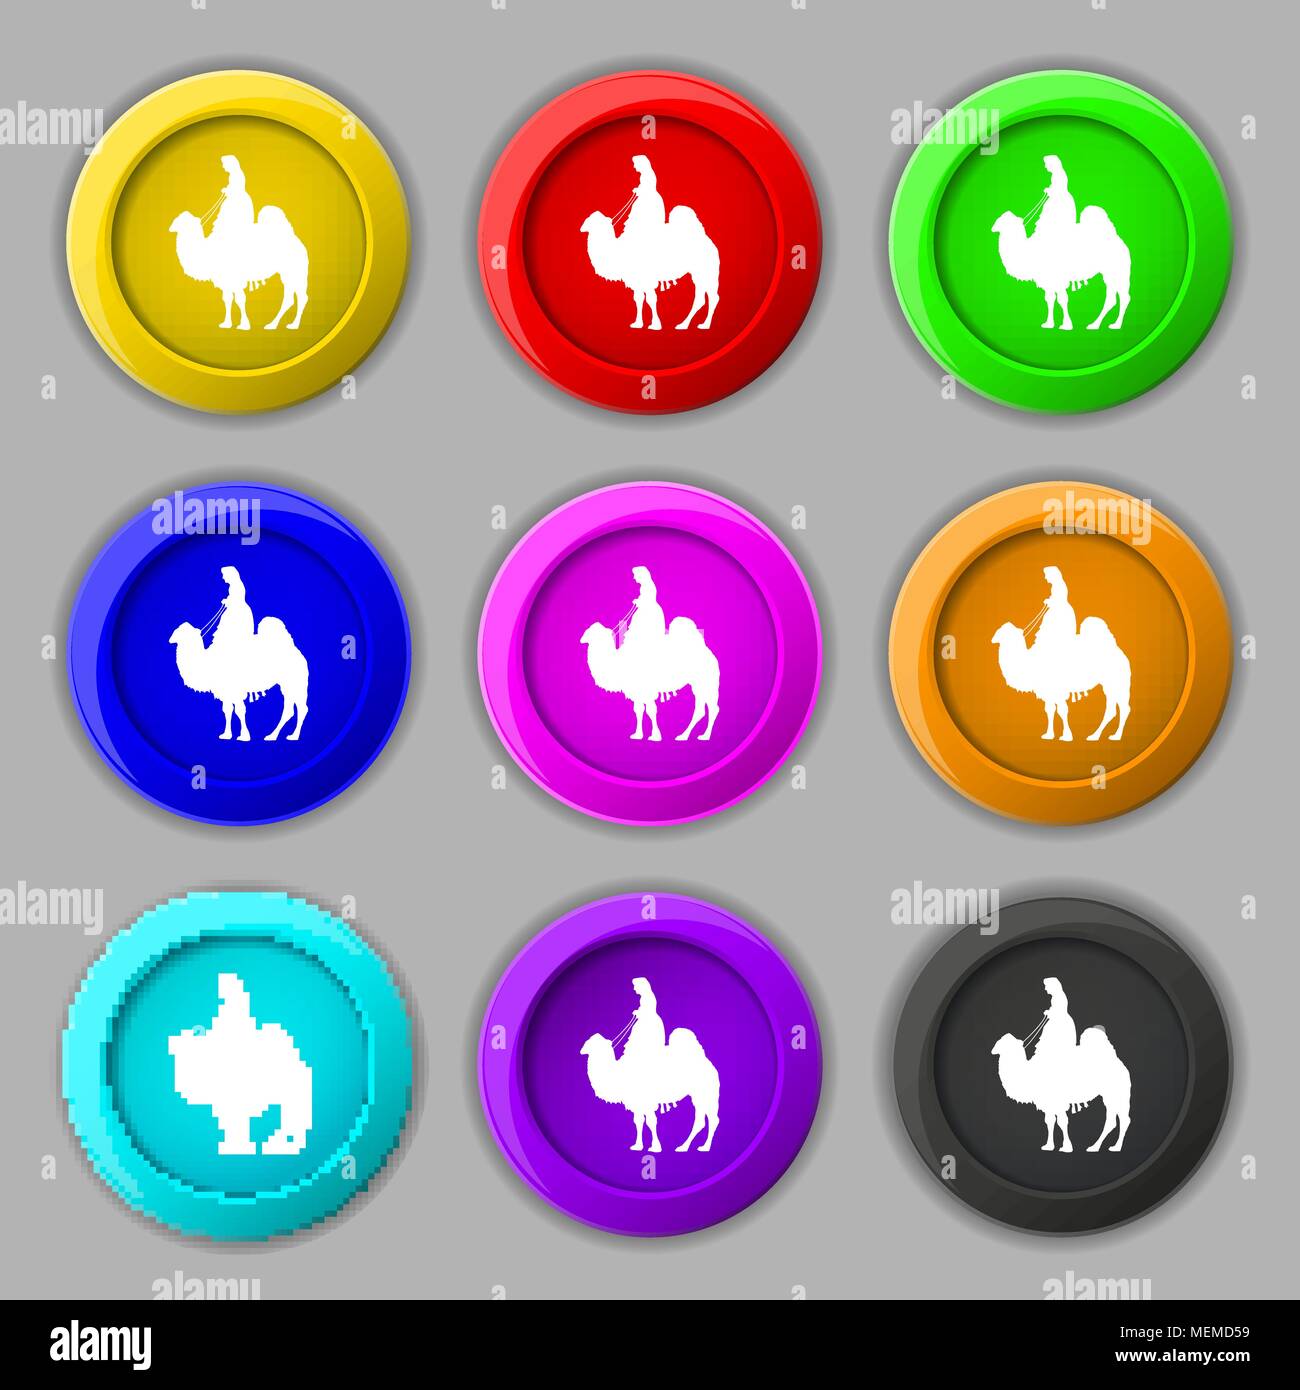 Kamel Symbol unterzeichnen. Symbol auf neun Runden farbigen Buttons. Vector Illustration Stock Vektor